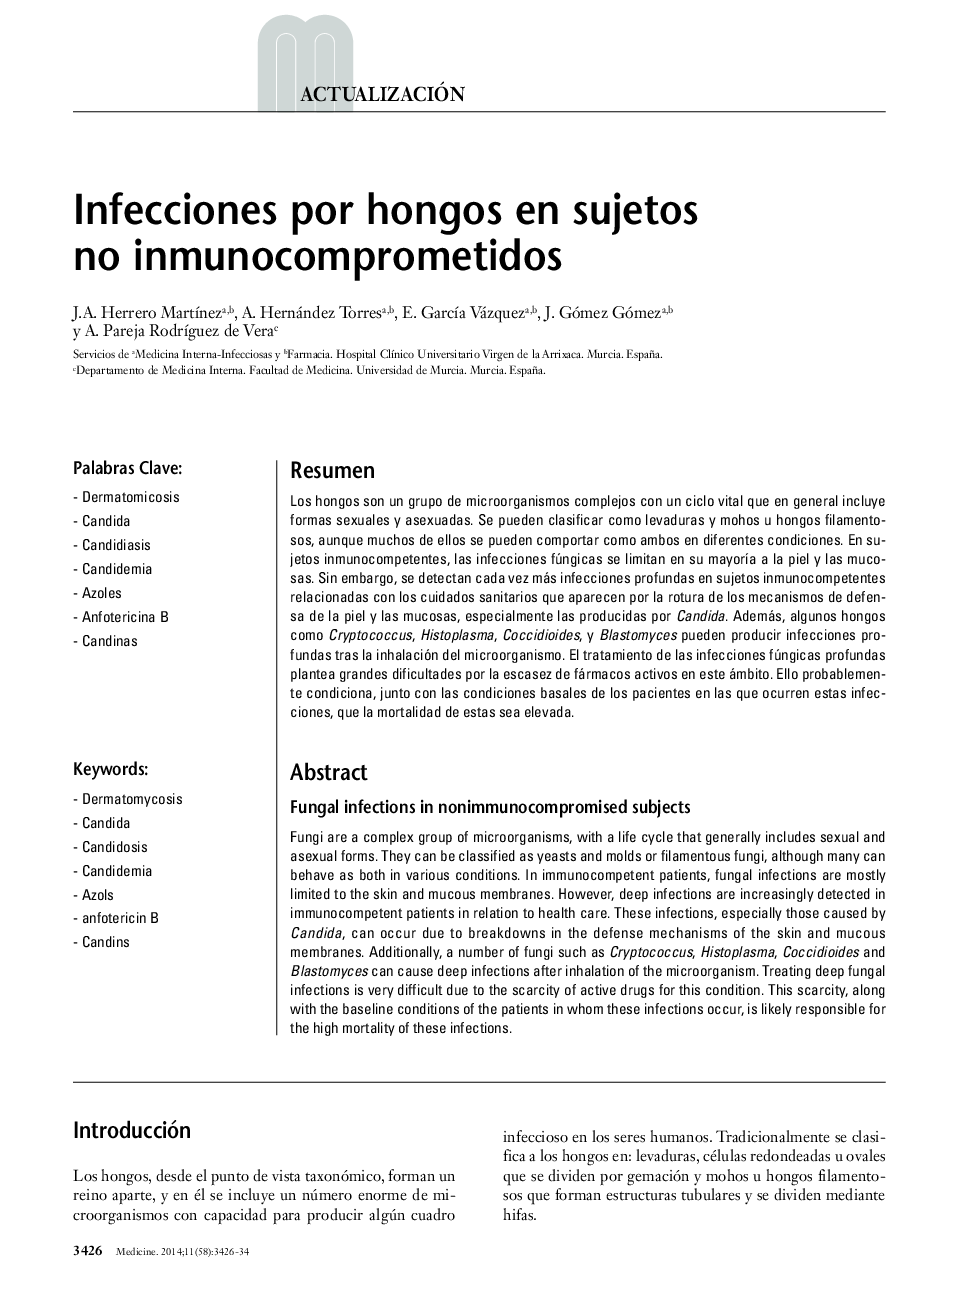 Infecciones por hongos en sujetos no inmunocomprometidos